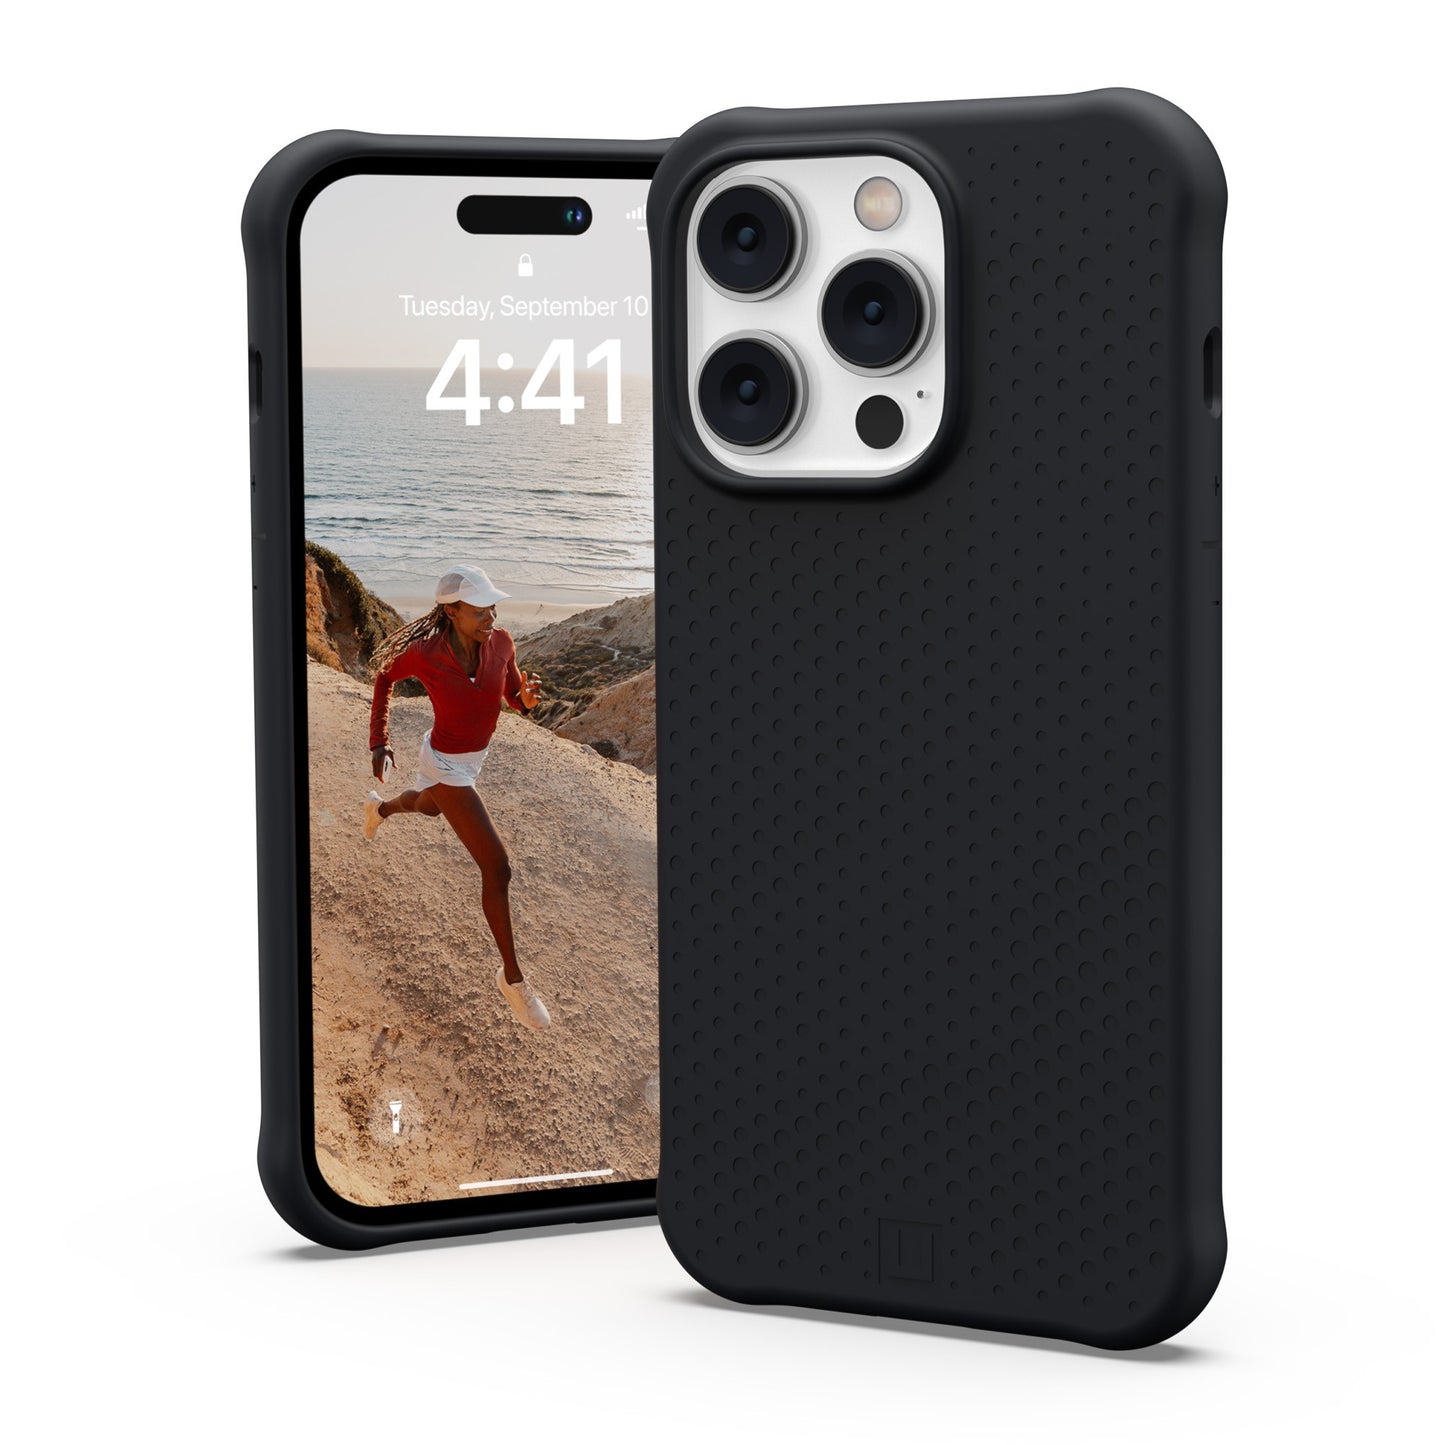 iPhone 14 Pro UAG Dot MagSafe Case - Black - 15-10185